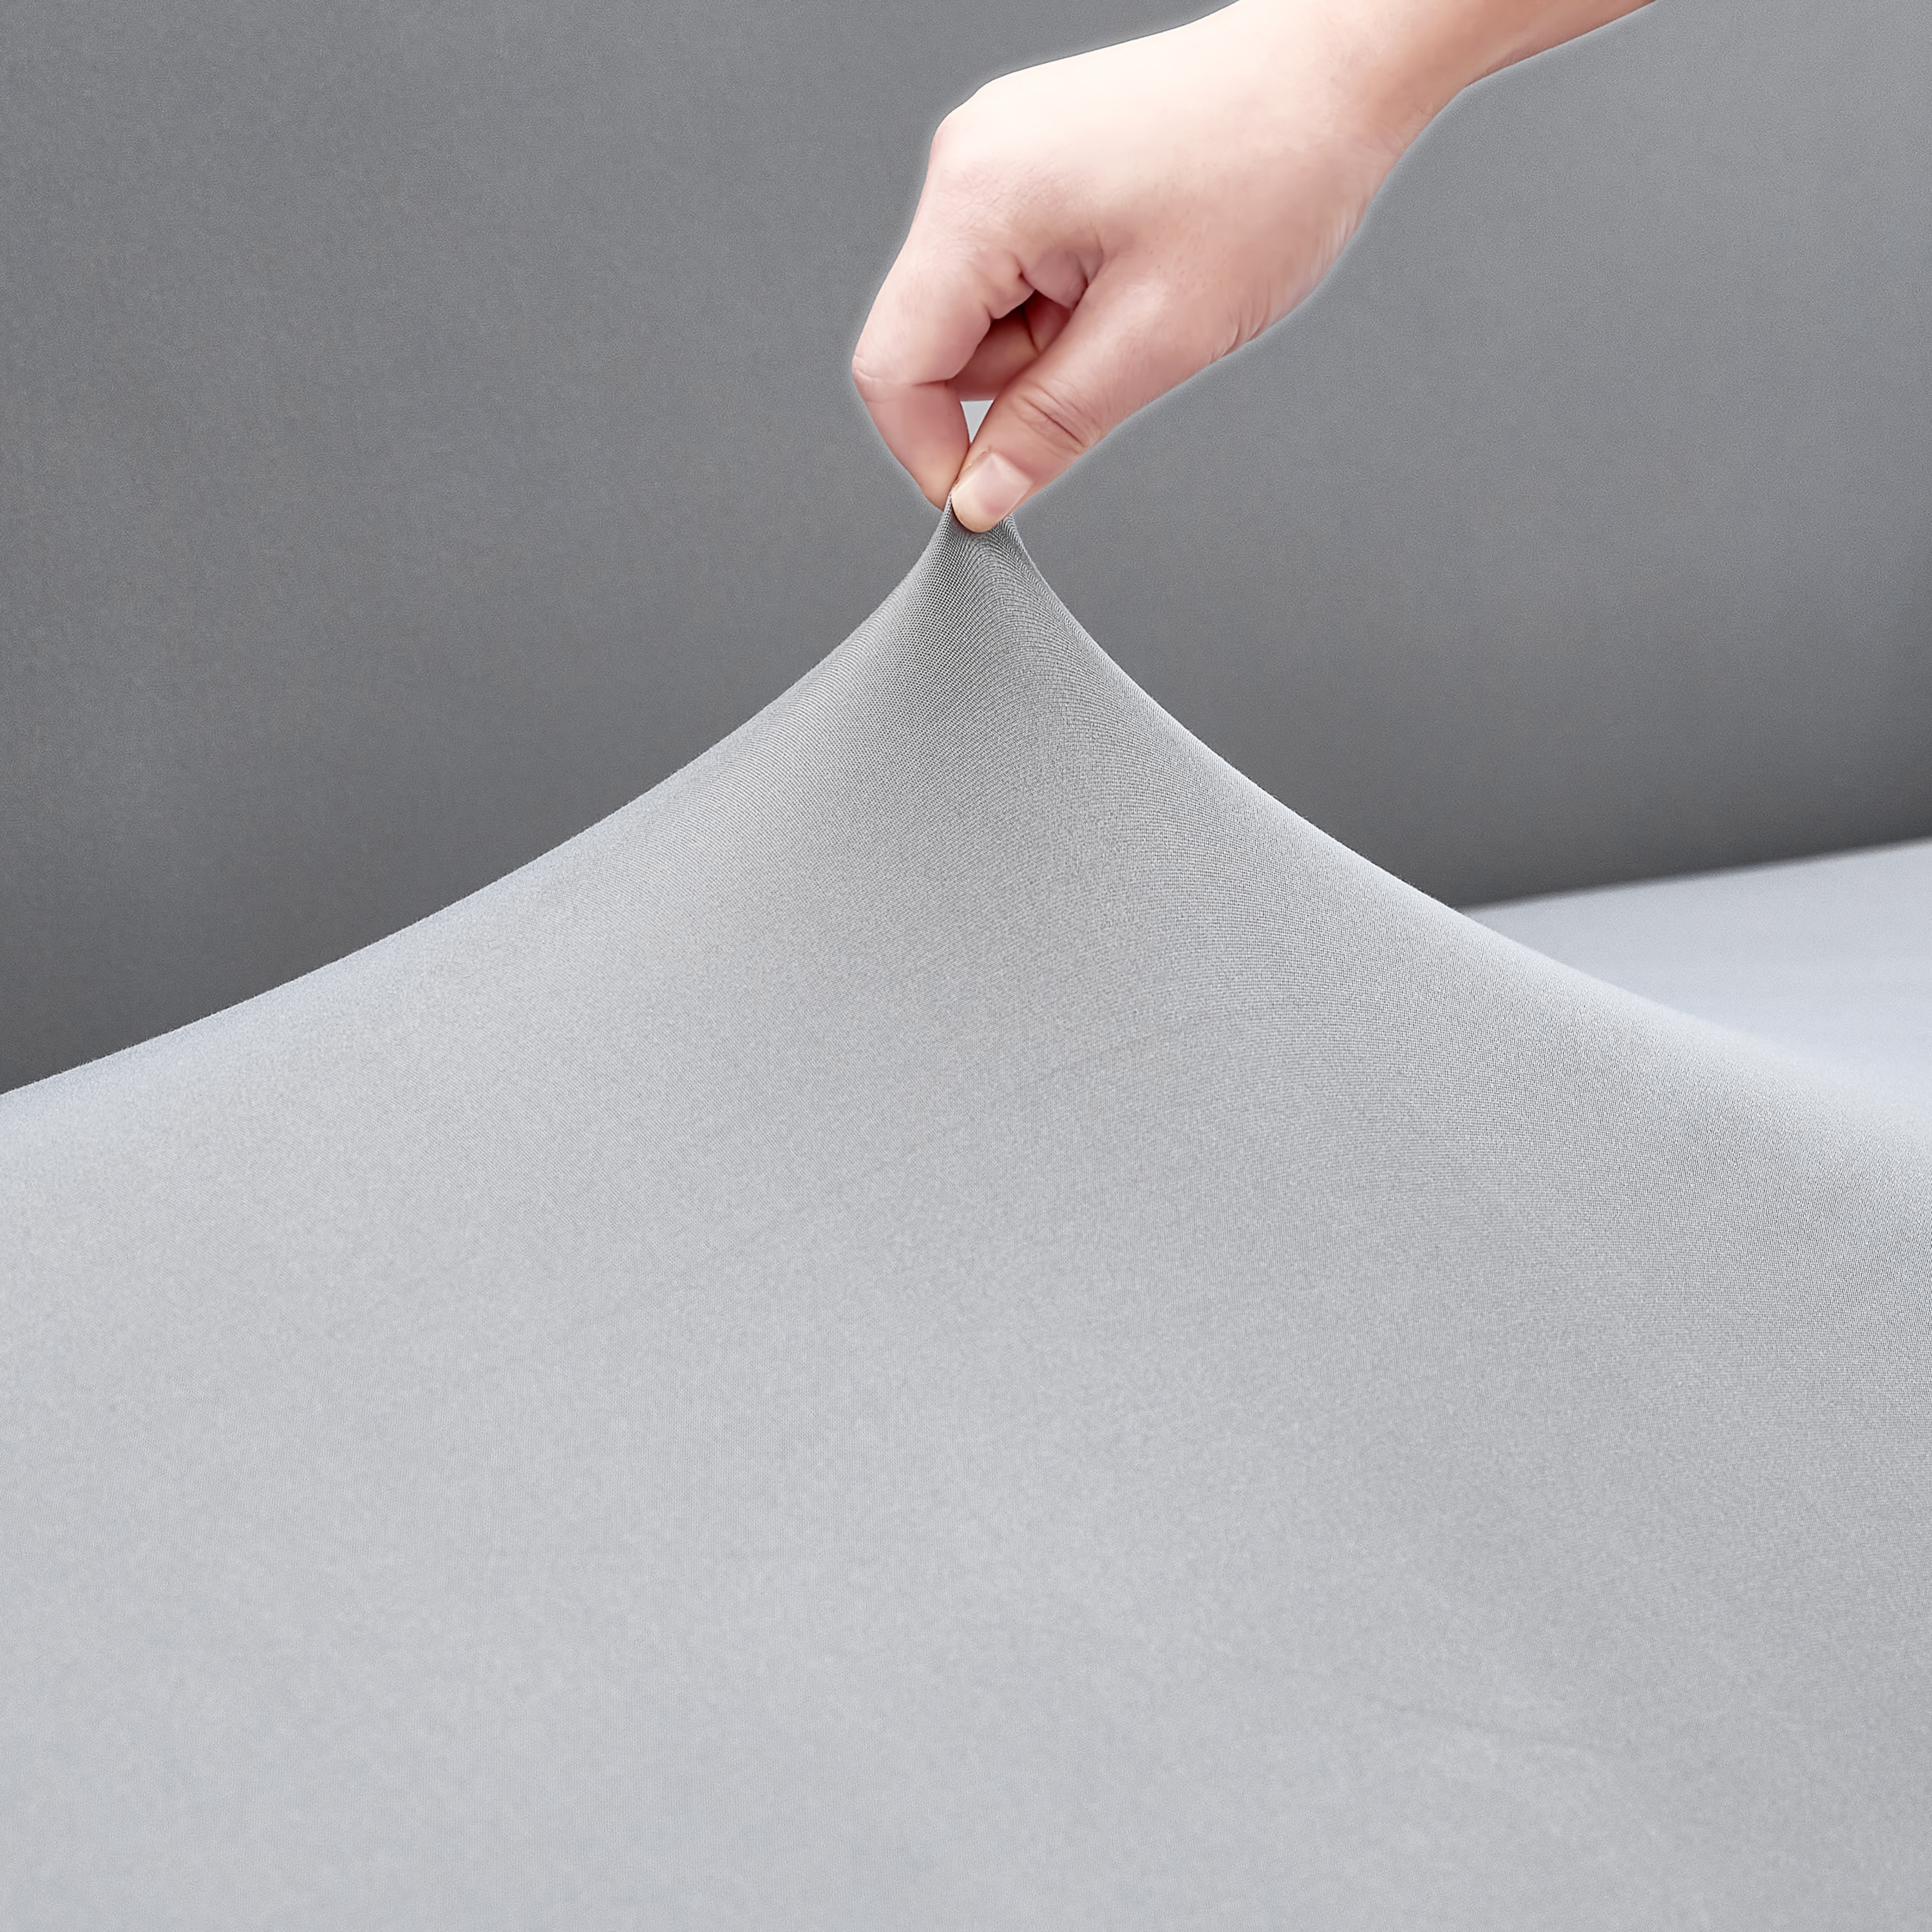 Grauer elastischer Sofabezug aus Mikrofaser-Polyester